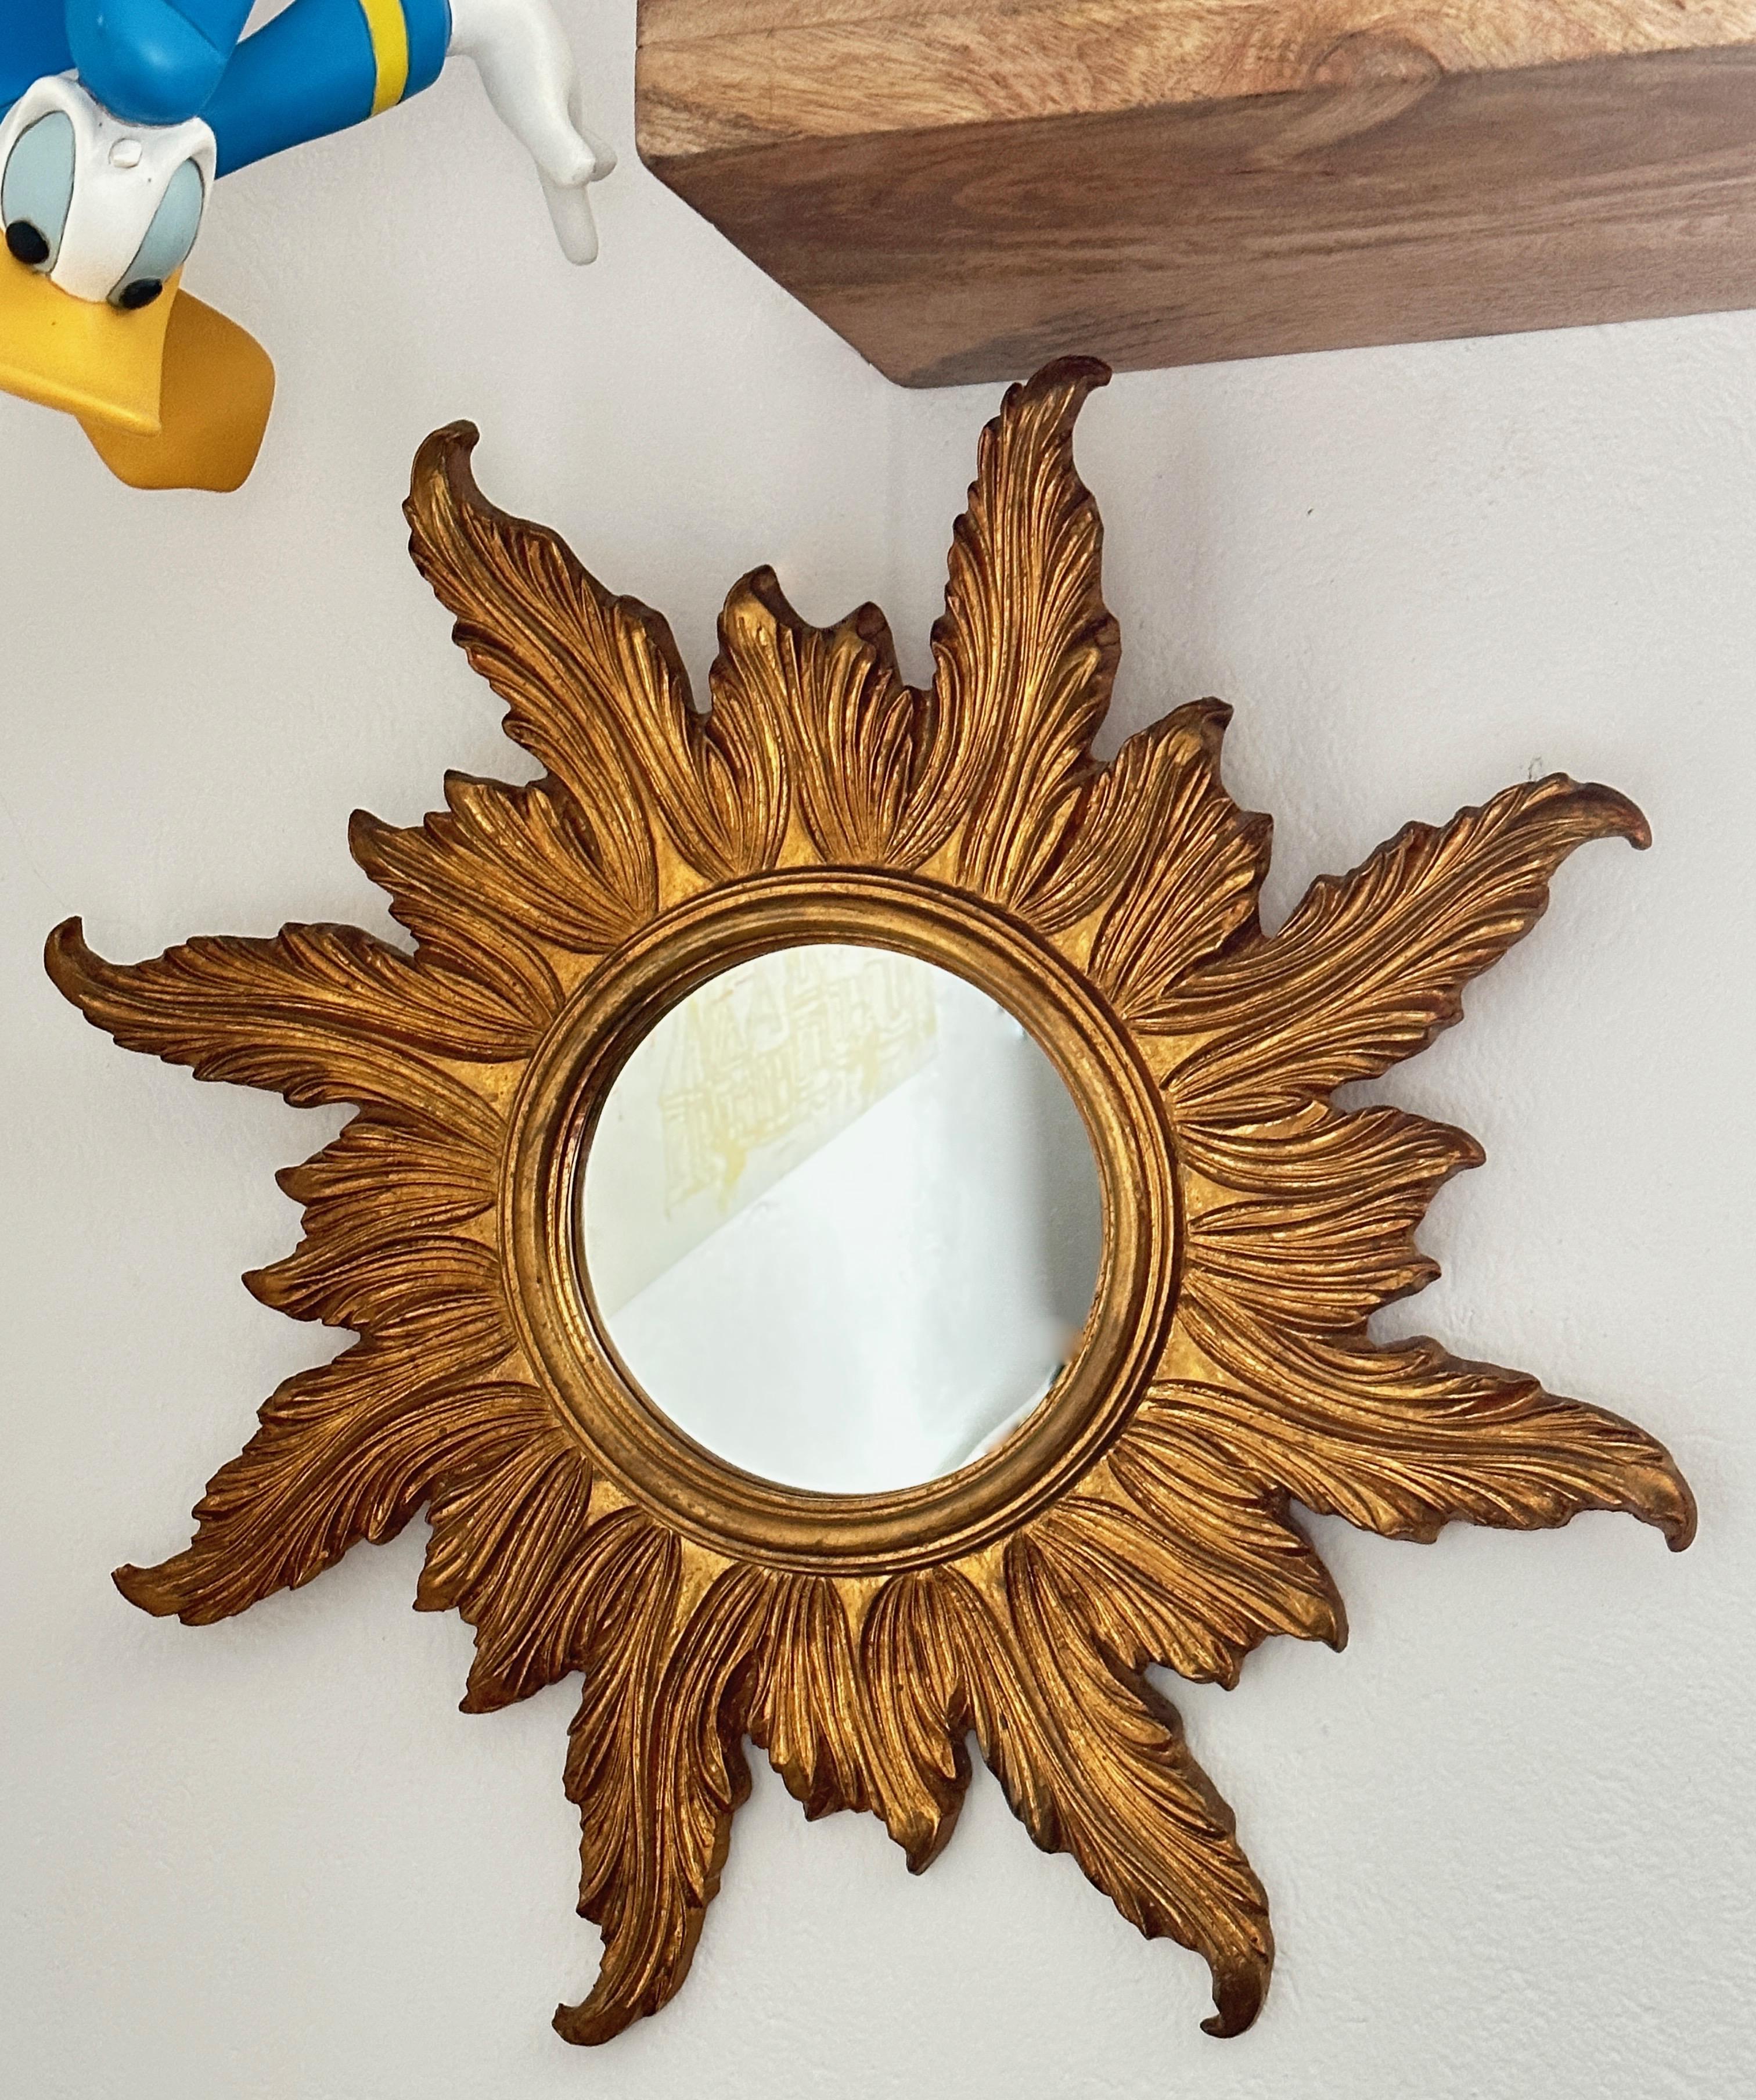 Un beau miroir en forme de starburst. Réalisé en composition dorée et en bois. Il mesure environ 22,63